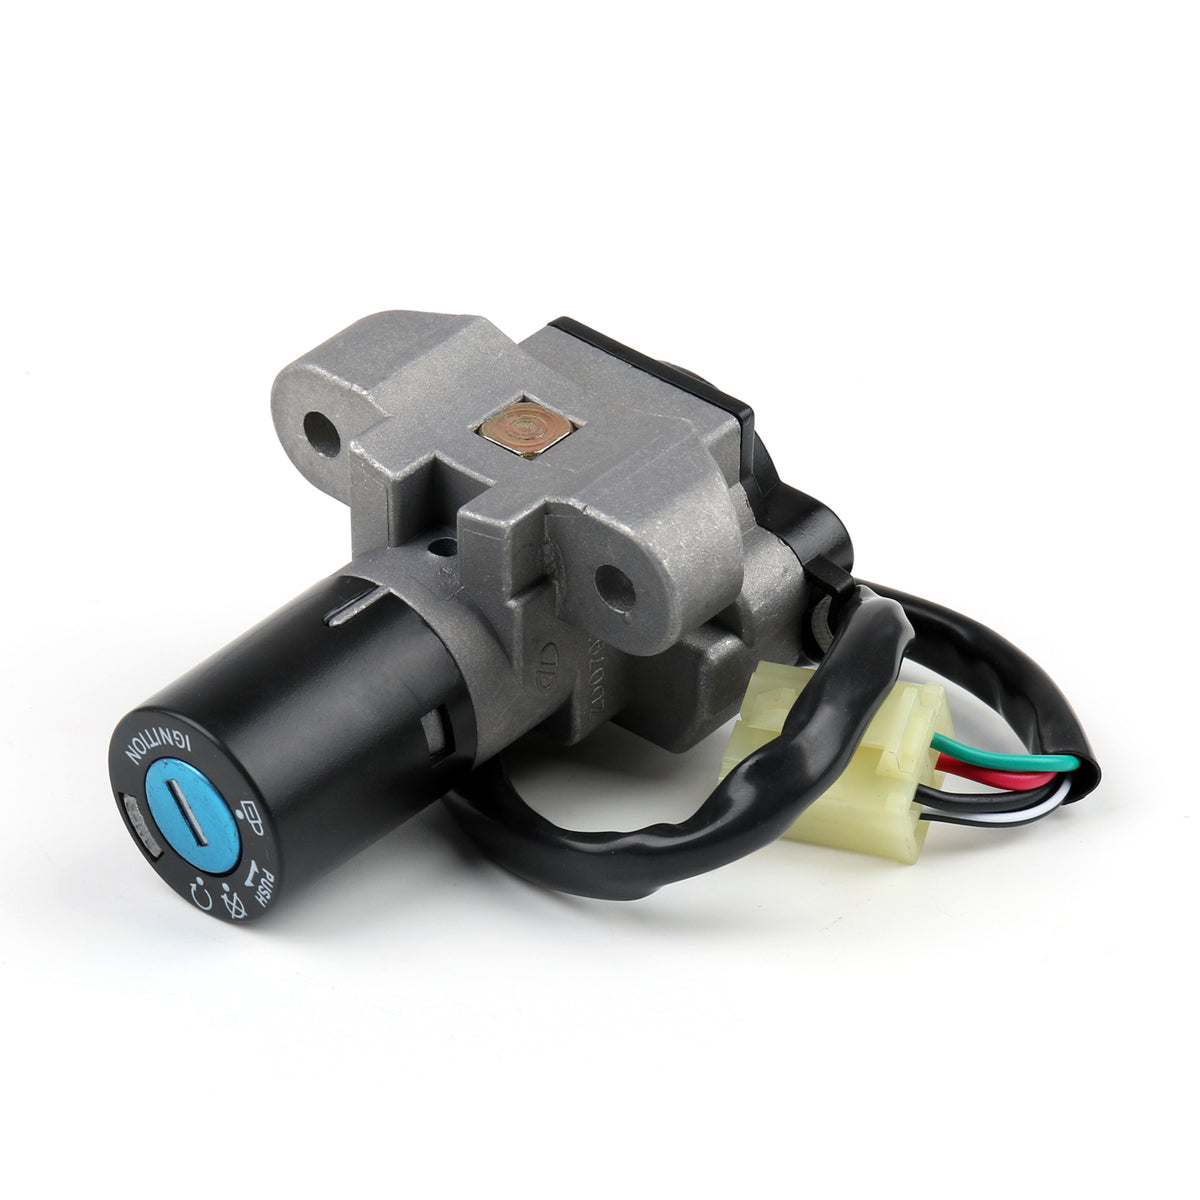 Ignition Switch Lock & Fuel Gas Cap Key Set For Suzuki GS500 2001-2012